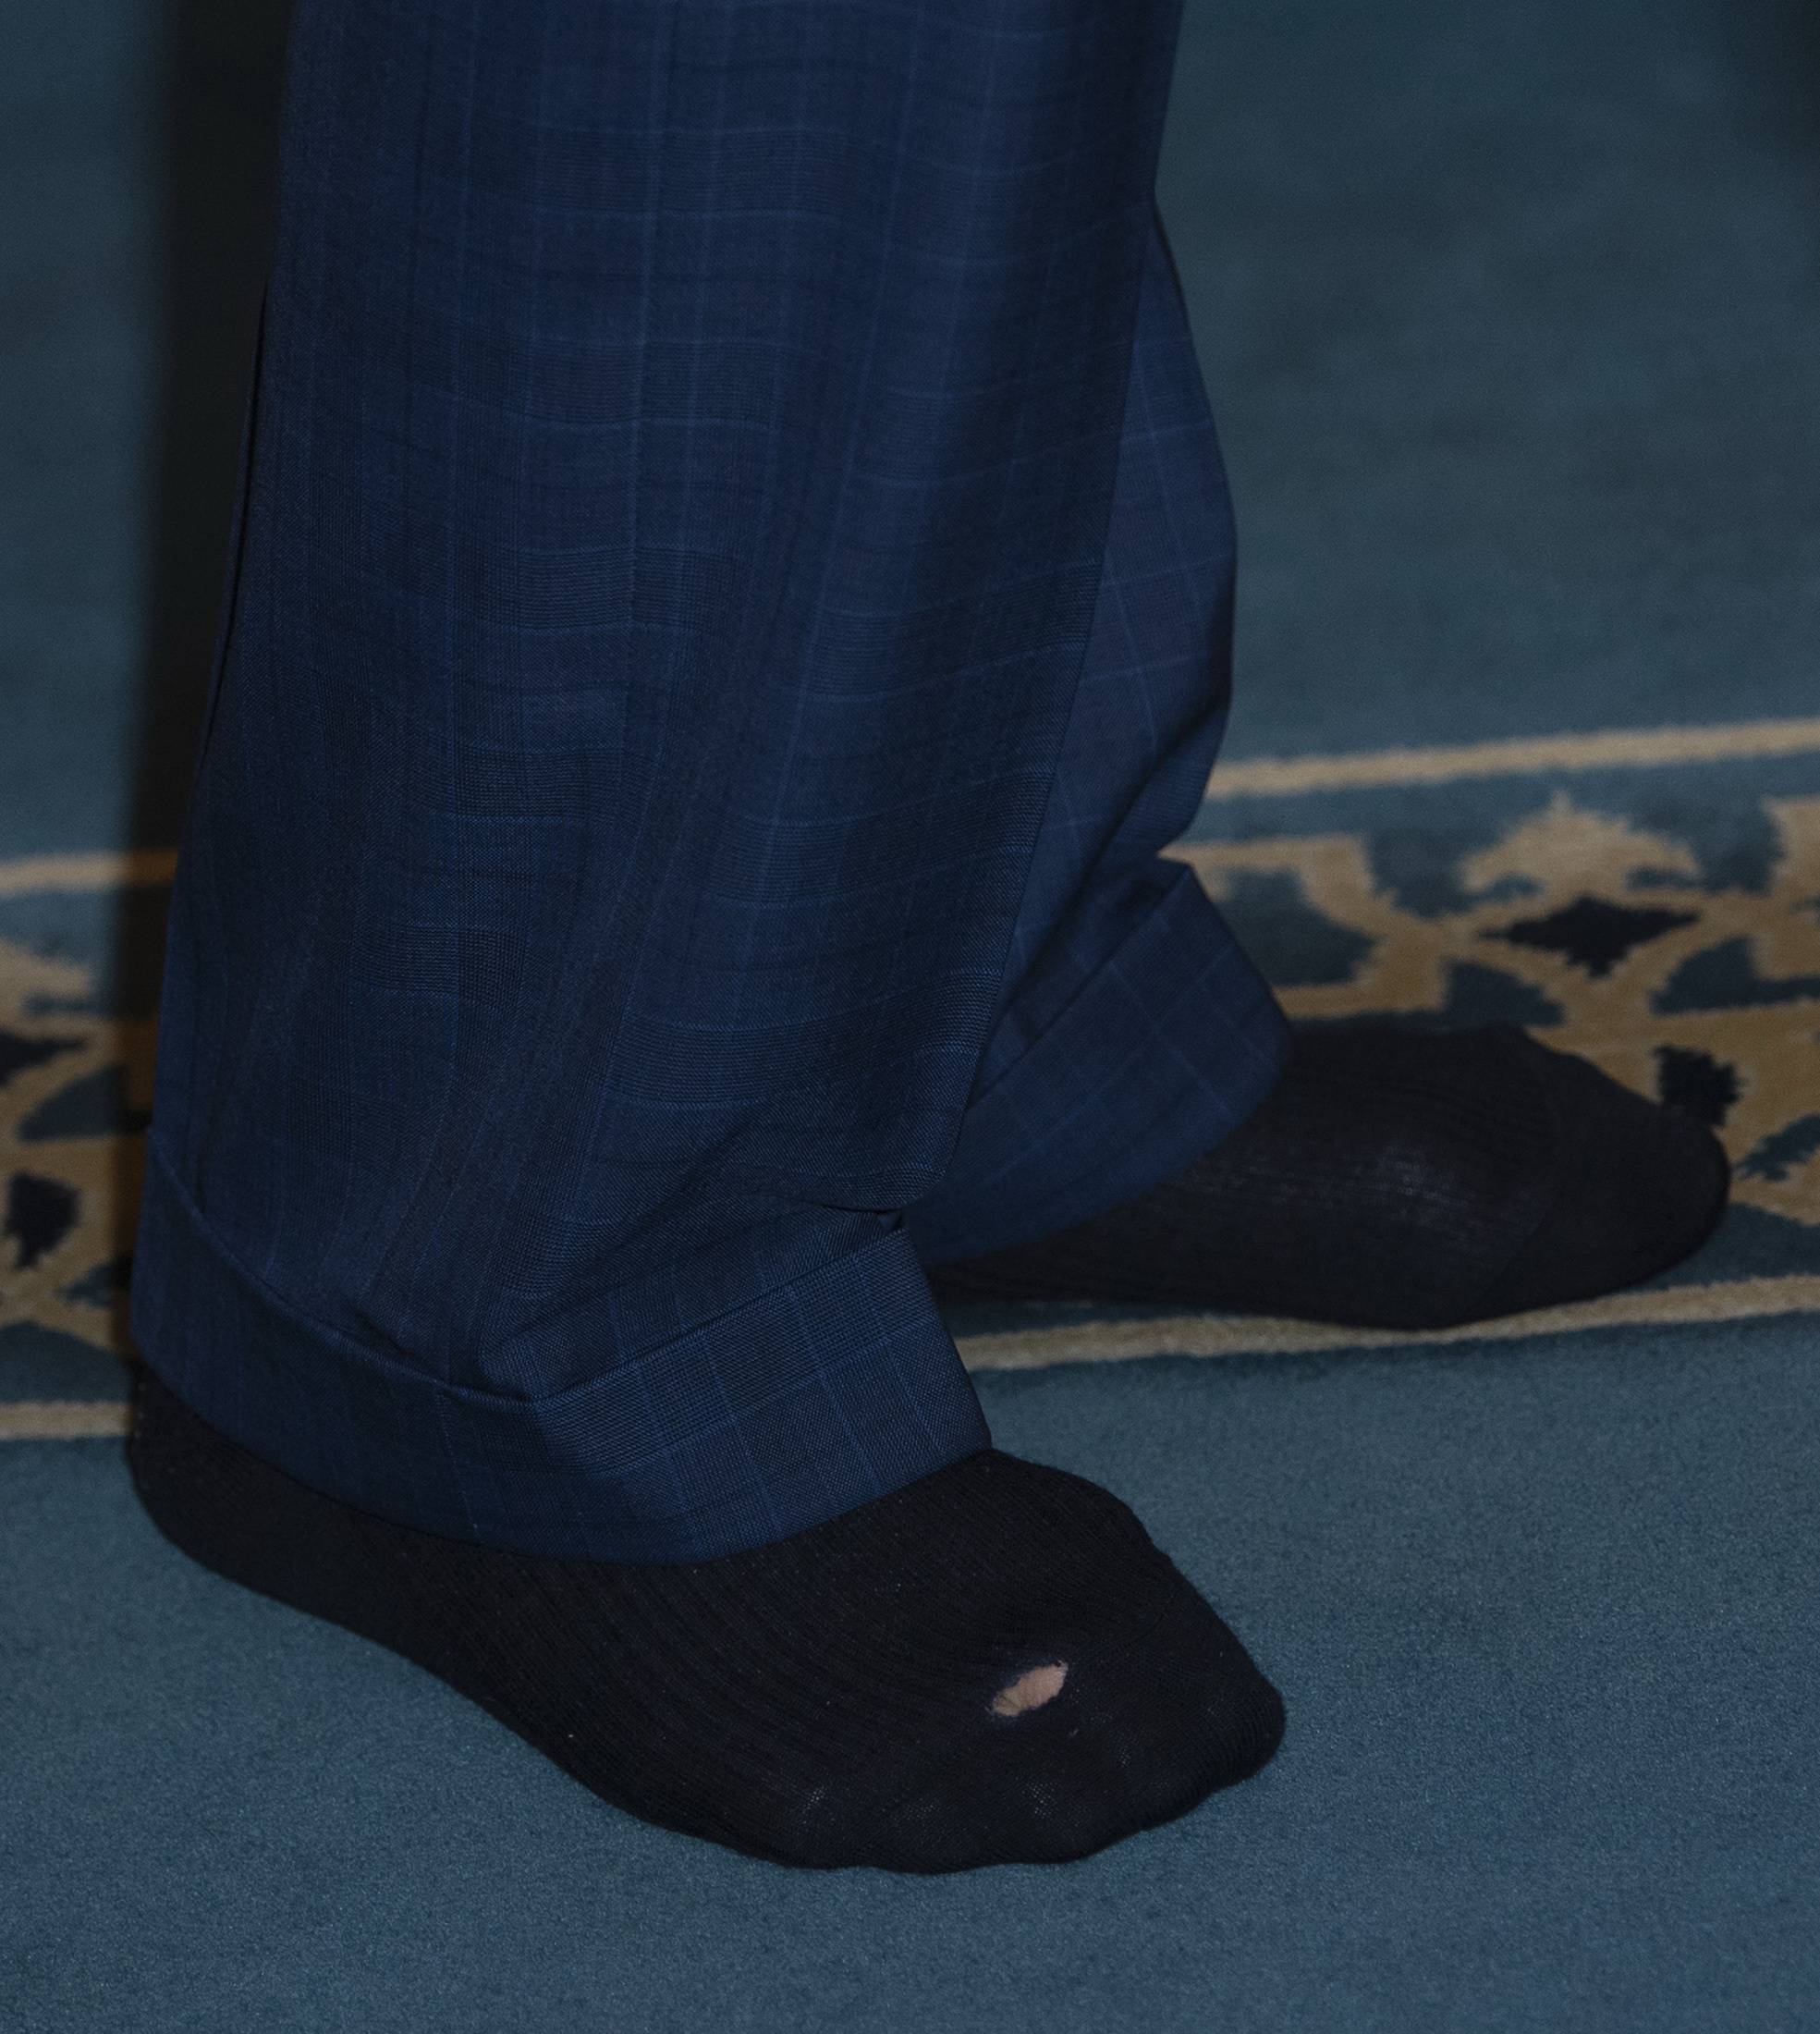 III. Károly király lyukas zokniban parádézott – fotó - Blikk